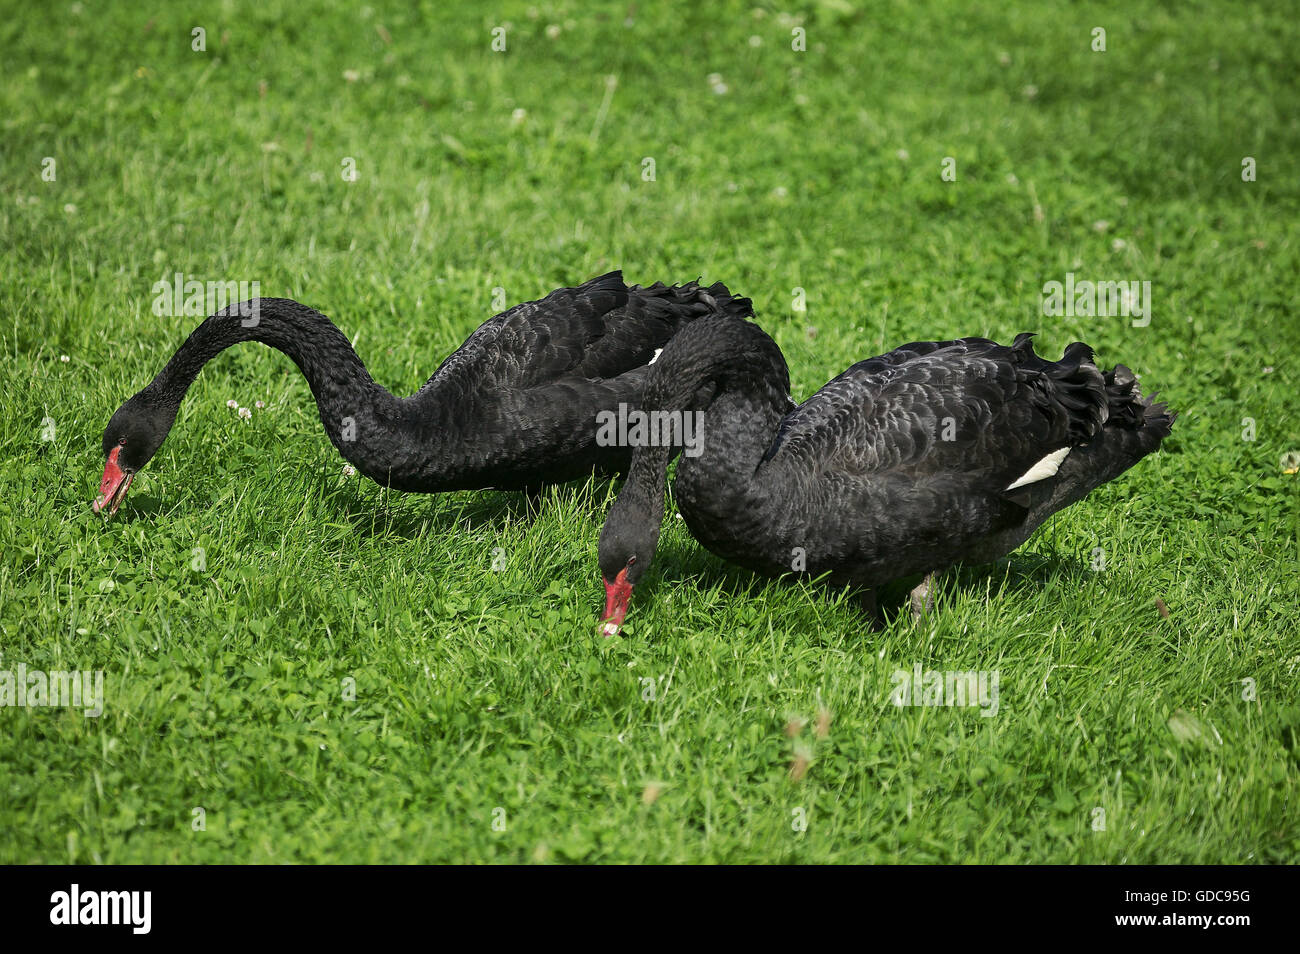 BLACK SWAN cygnus atratus, par comer hierba Foto de stock